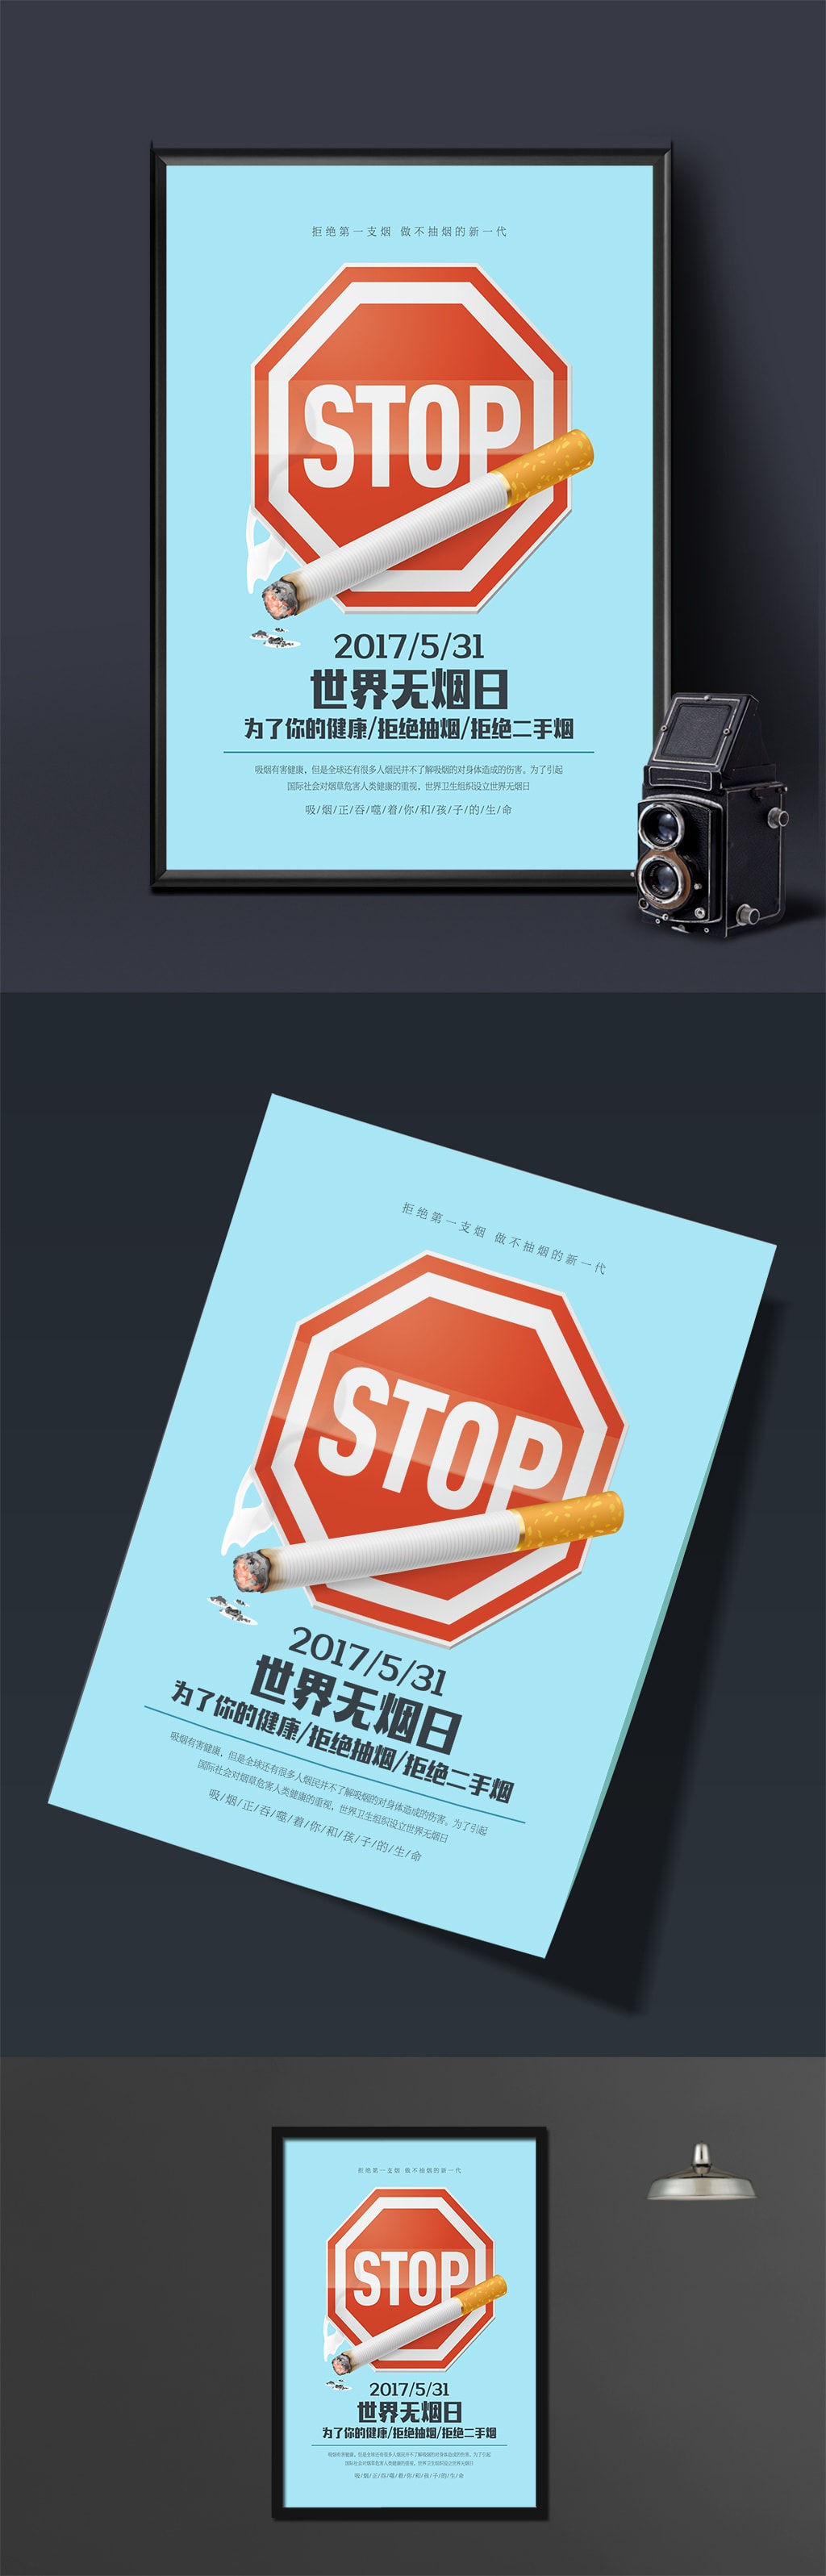 世界无烟日促销宣传海报设计模版